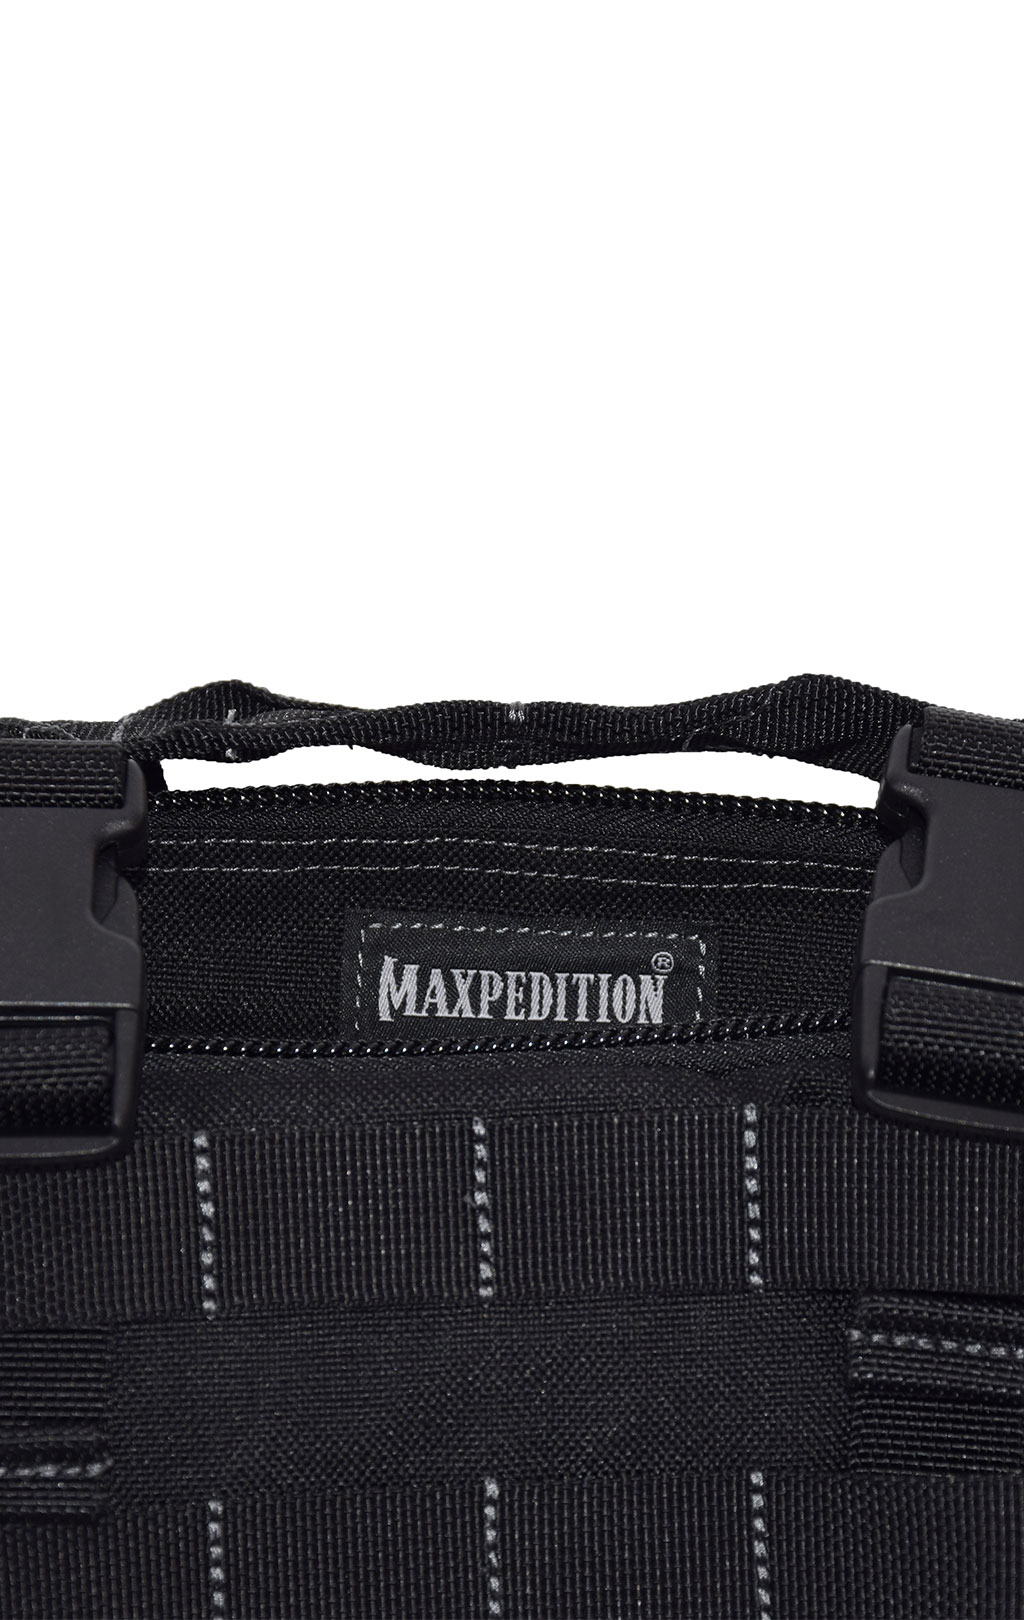 Сумка Maxpedition PROTEUS VERSIPACK 25x8x15 black 